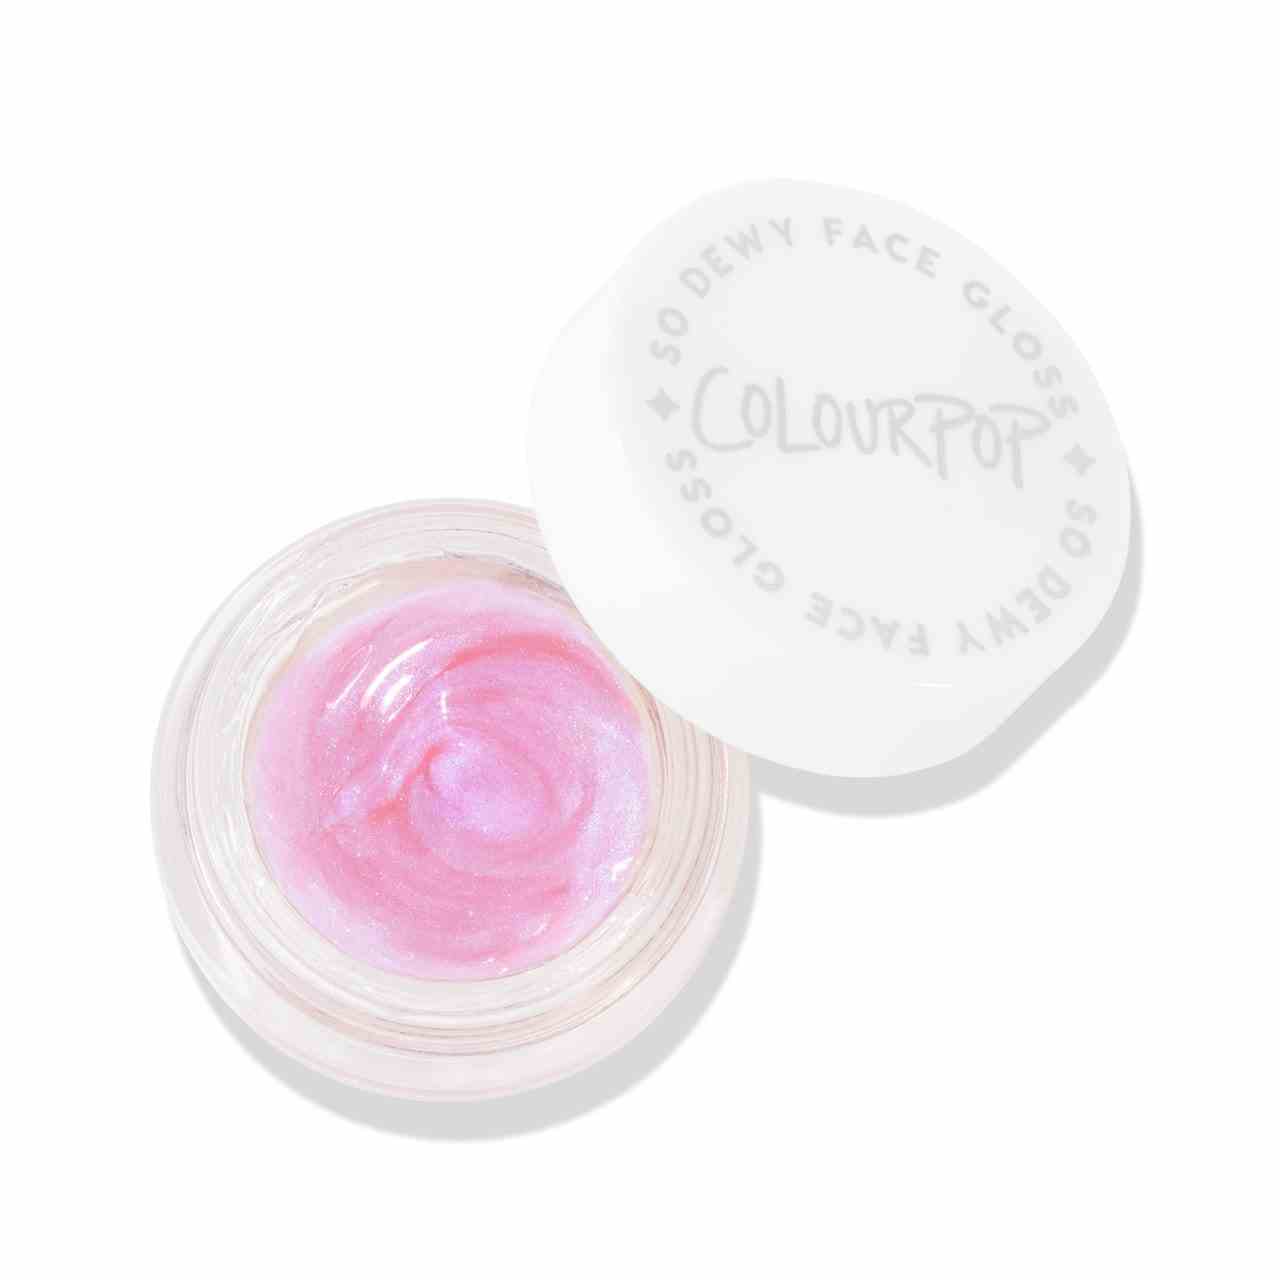 ColourPop So Dewy Face + Eye Gloss in Aurora Struck weißer Dose mit schillerndem rosa Eye Gloss auf weißem Hintergrund